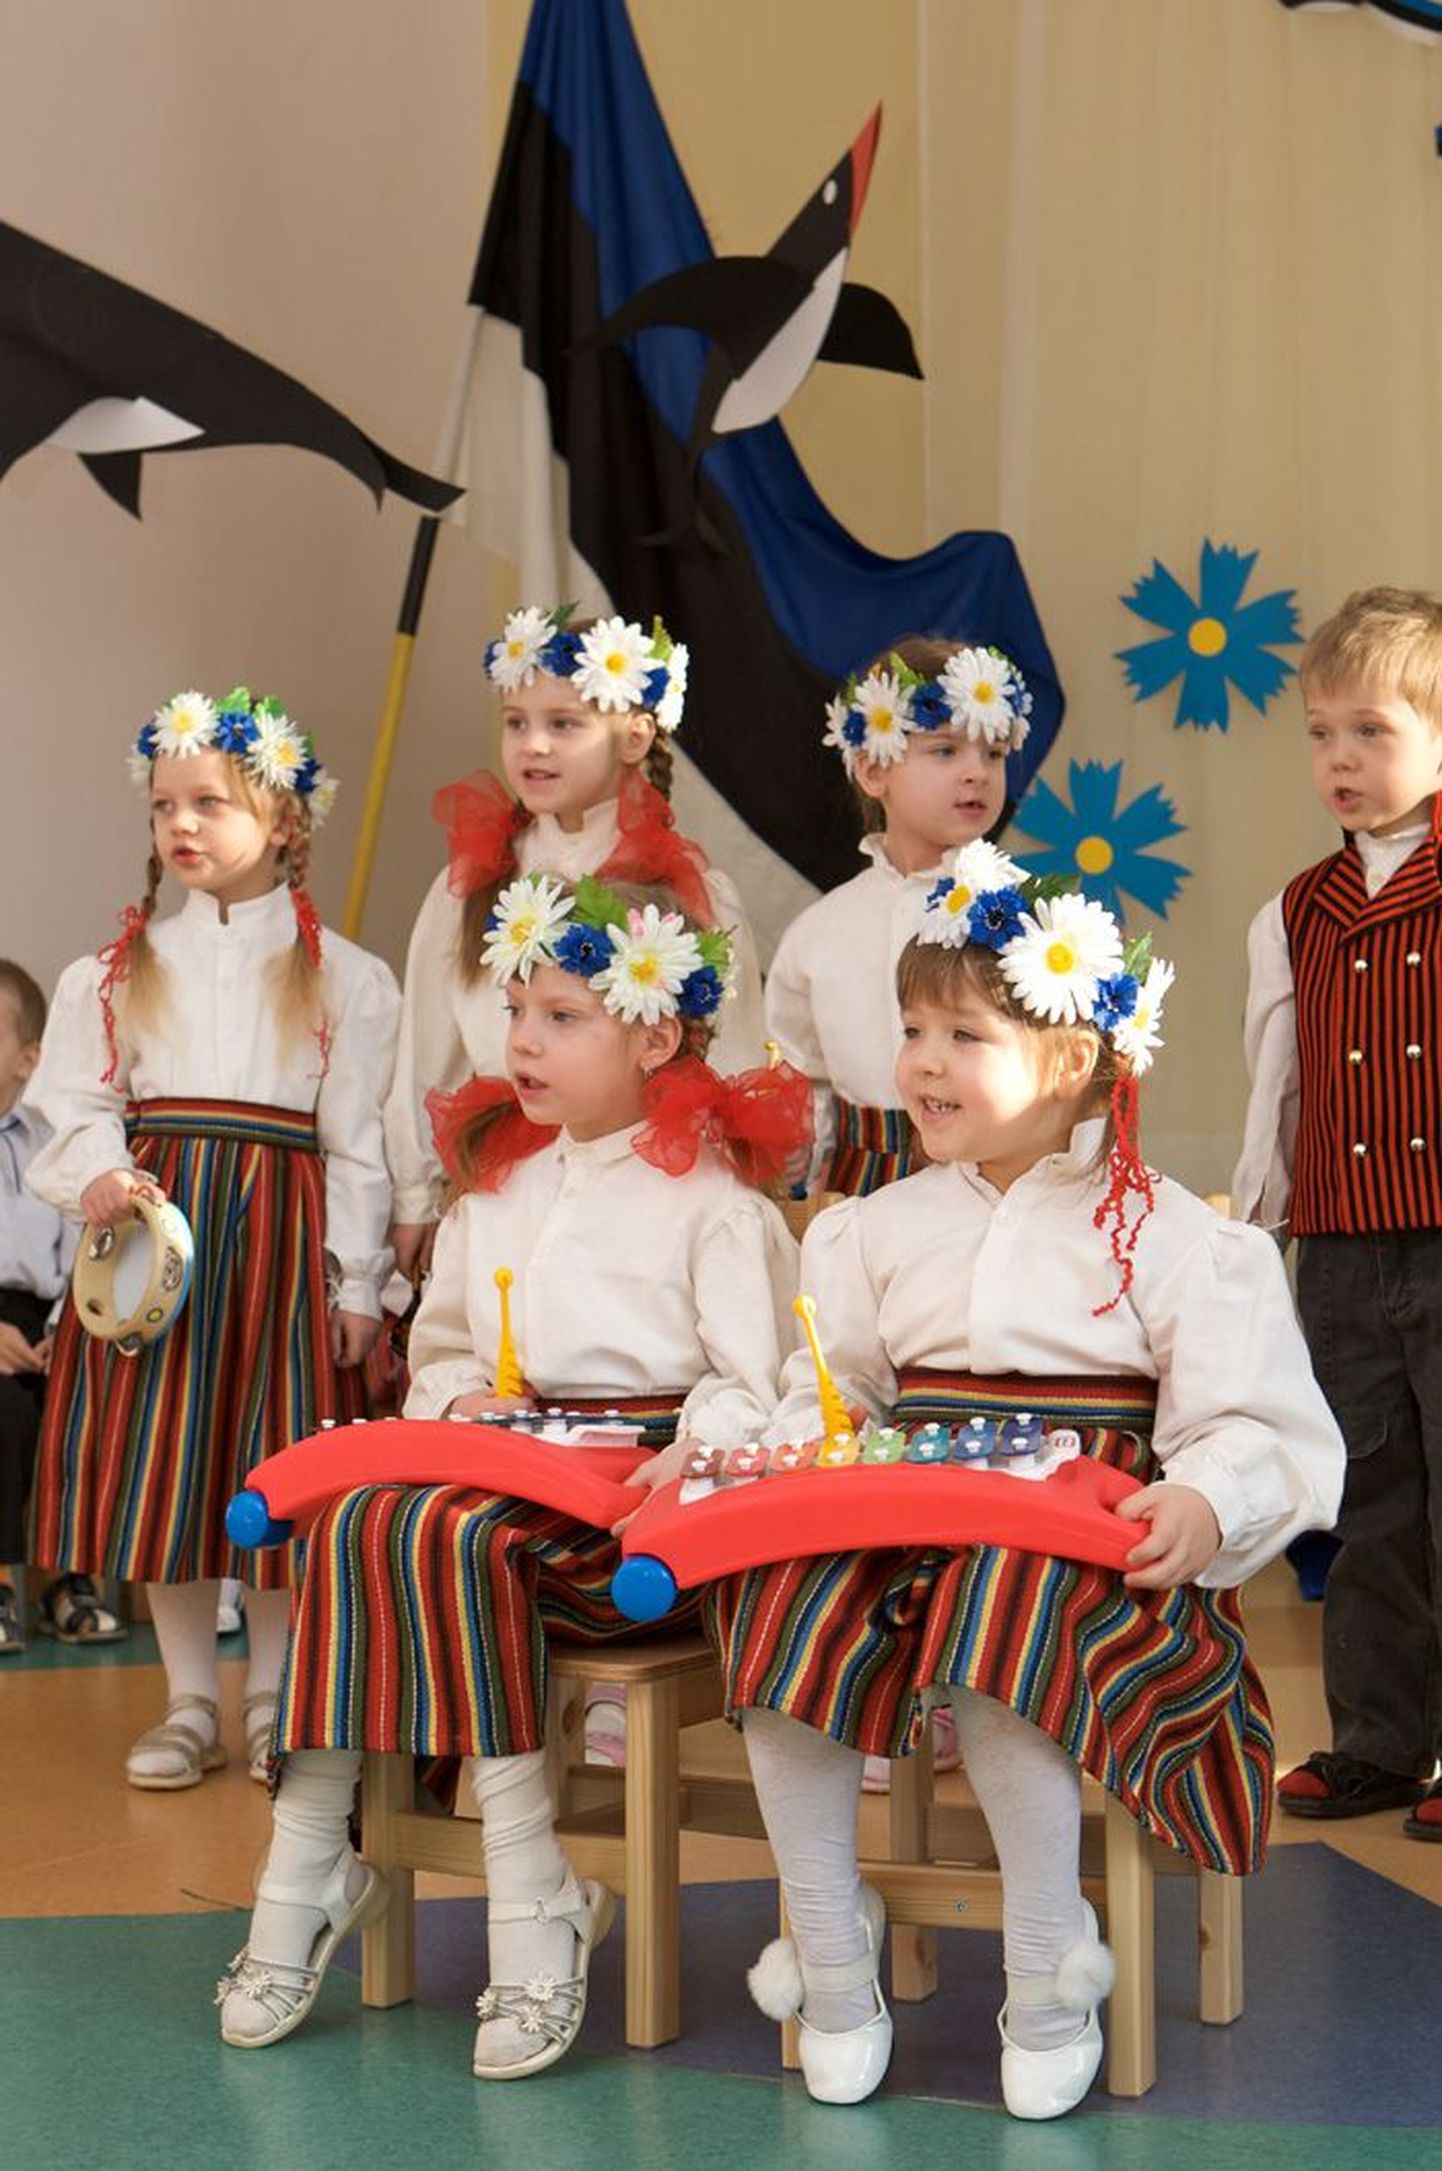 Piirilinna Valga Pääsukese lasteaia mudilased kandsid Eesti Vabariigi sünnipäevapeol nii vene kui ka eesti rahvarõivaid. Ka laulud kõlasid laste suust mõlemas keeles.